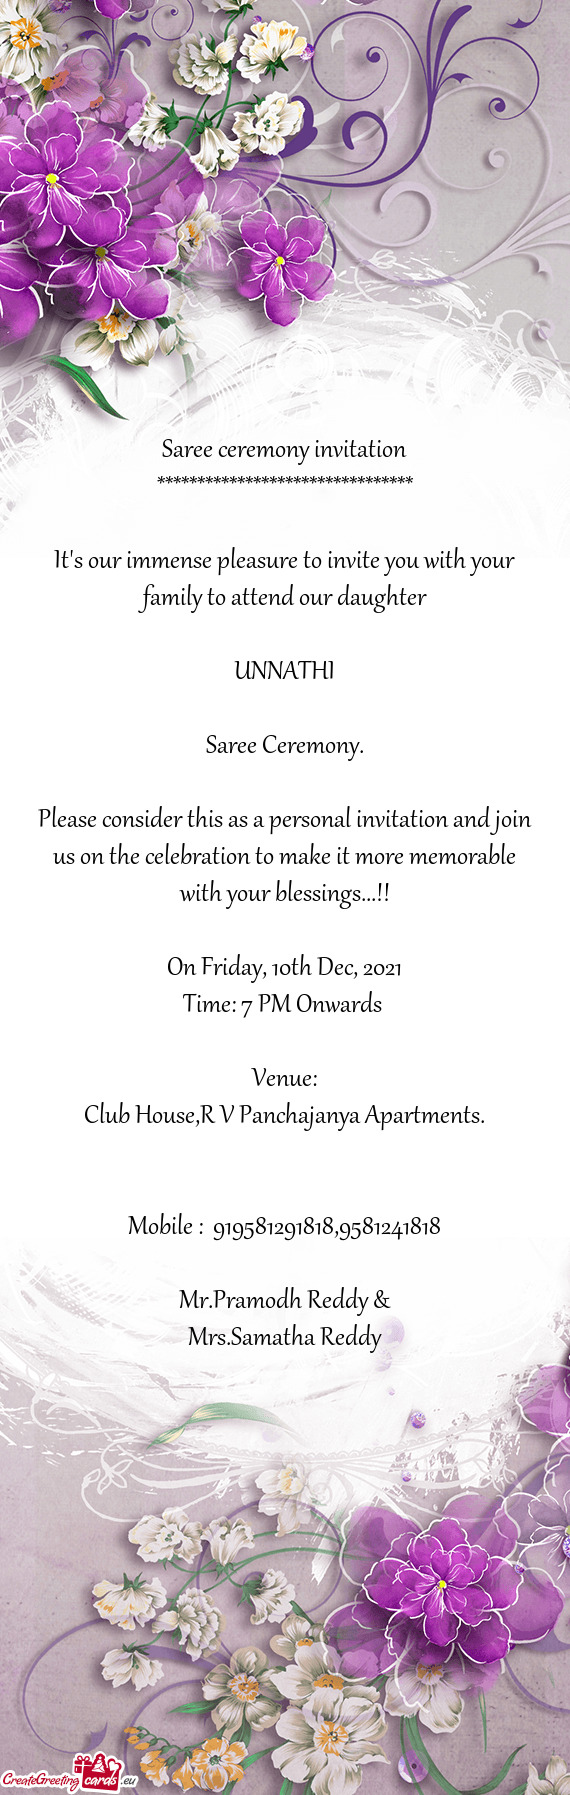 Club House,R V Panchajanya Apartments